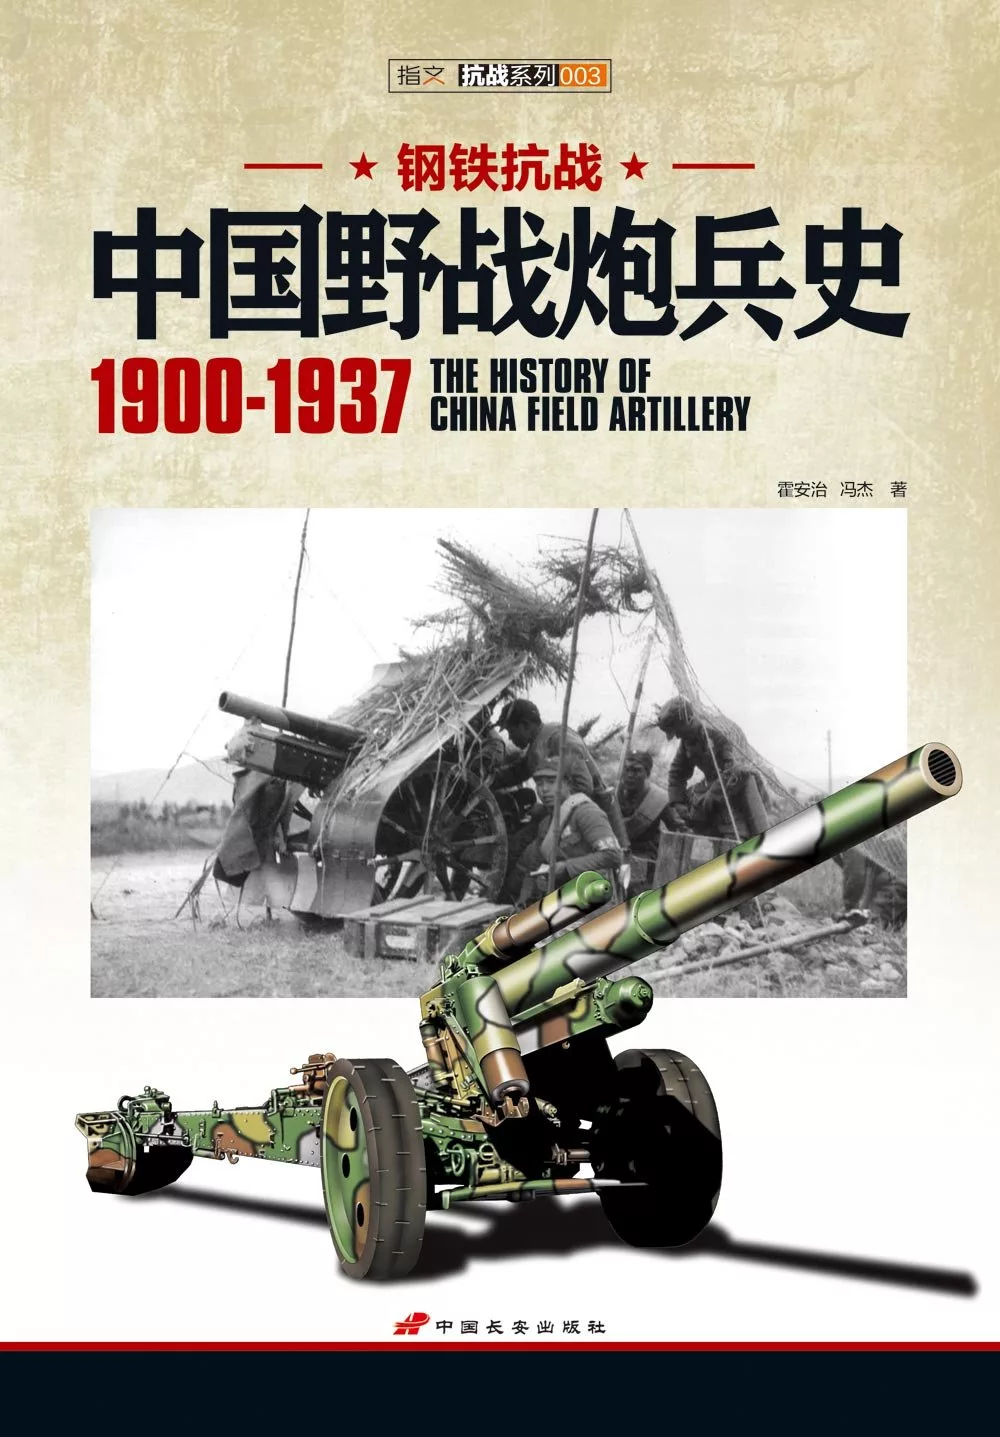 鋼鐵抗戰︰中國野戰炮兵史（1900-1937）